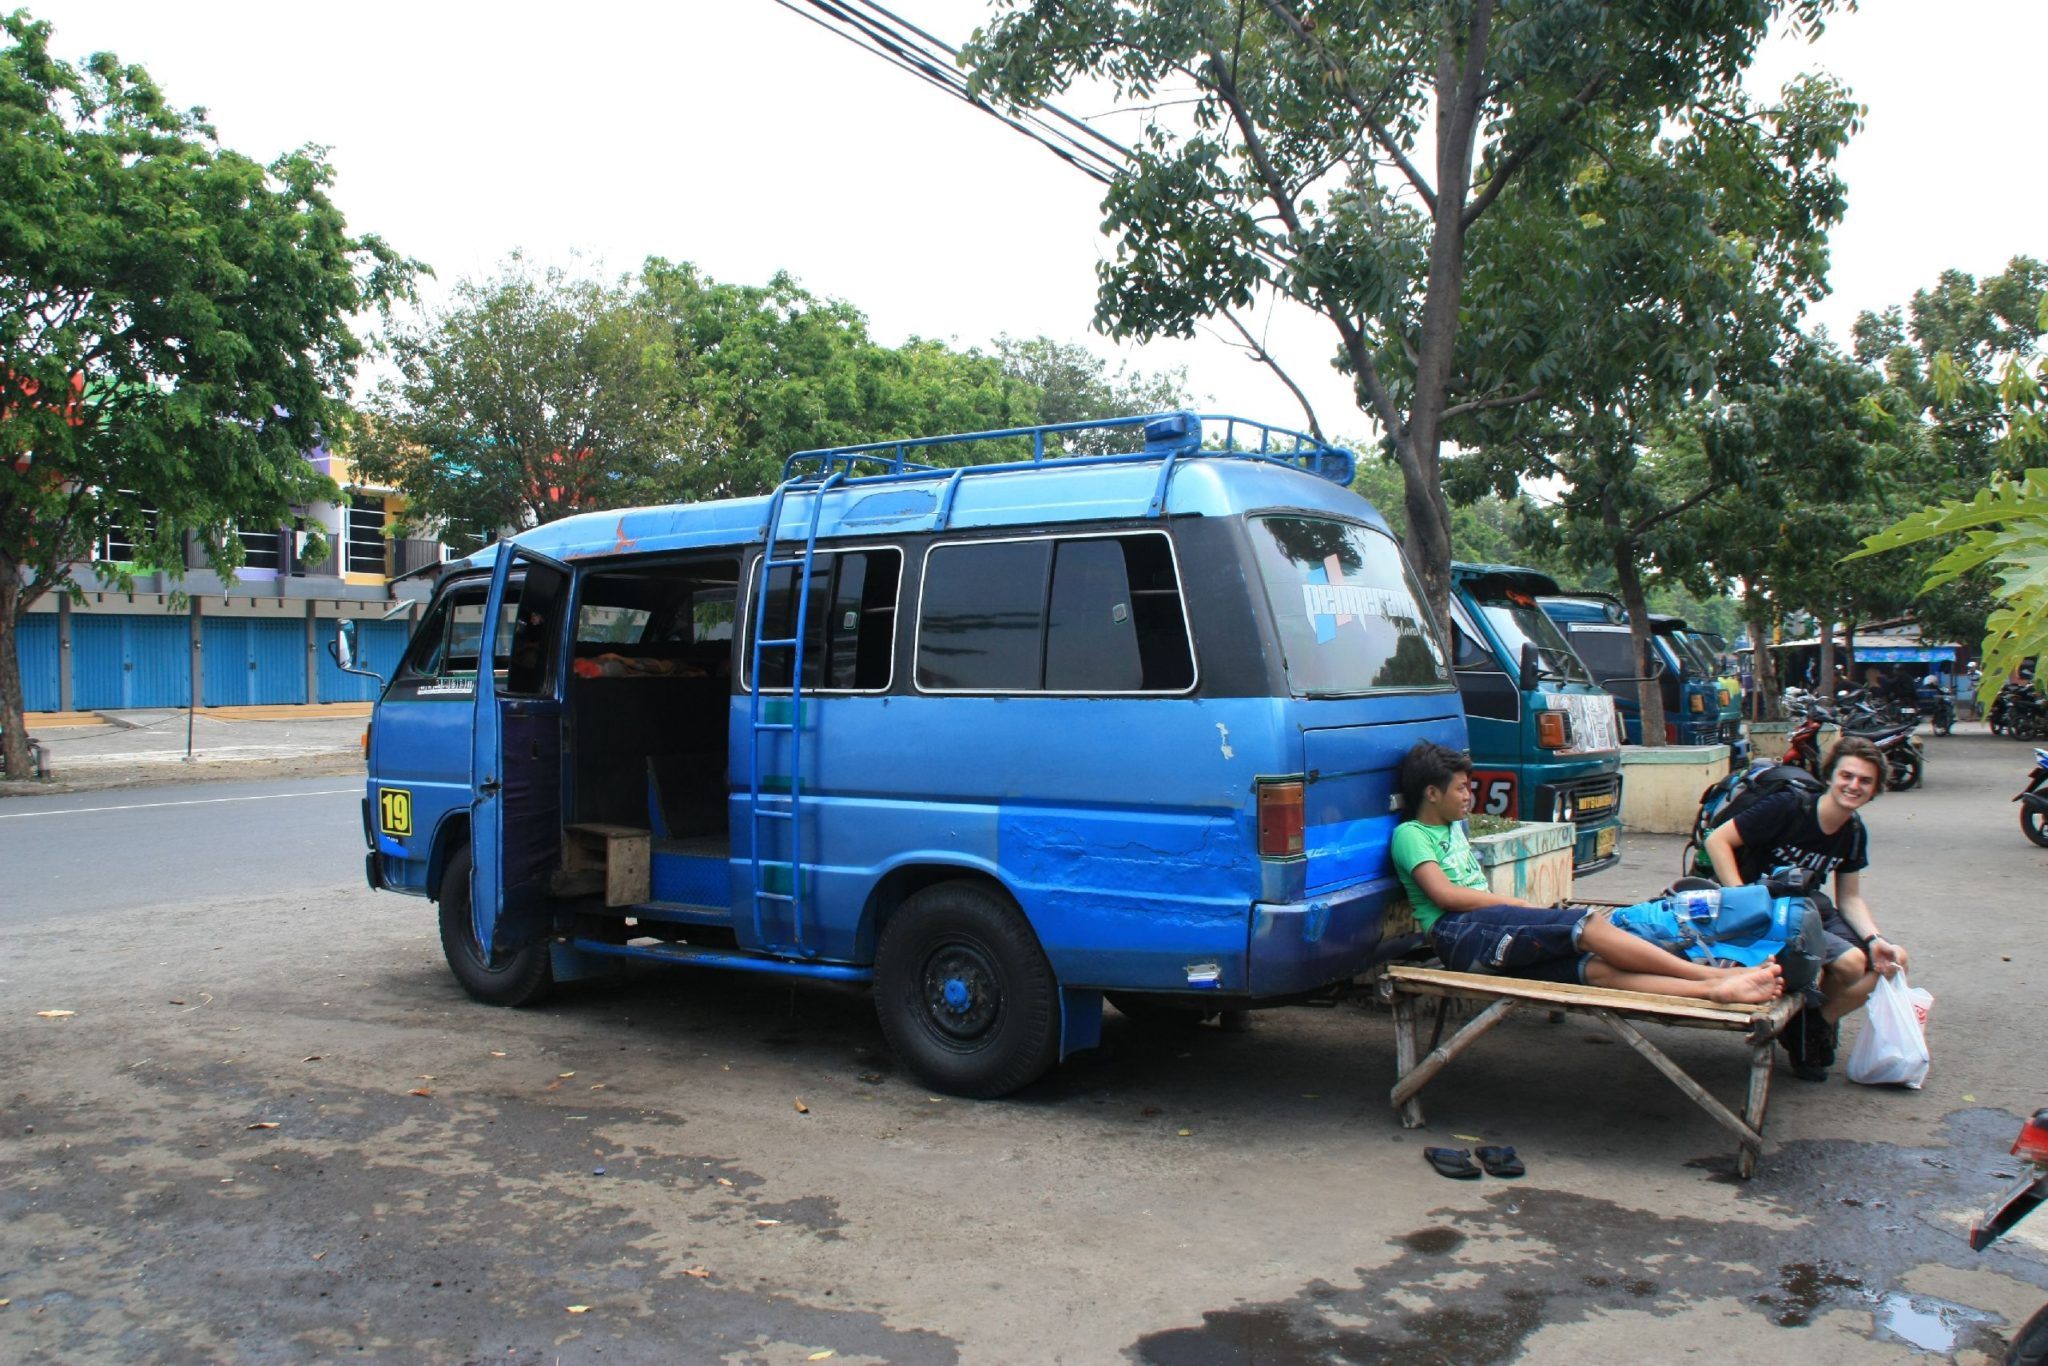 stanoviště minibusů vedle autobusového terminálu v Probolinggu